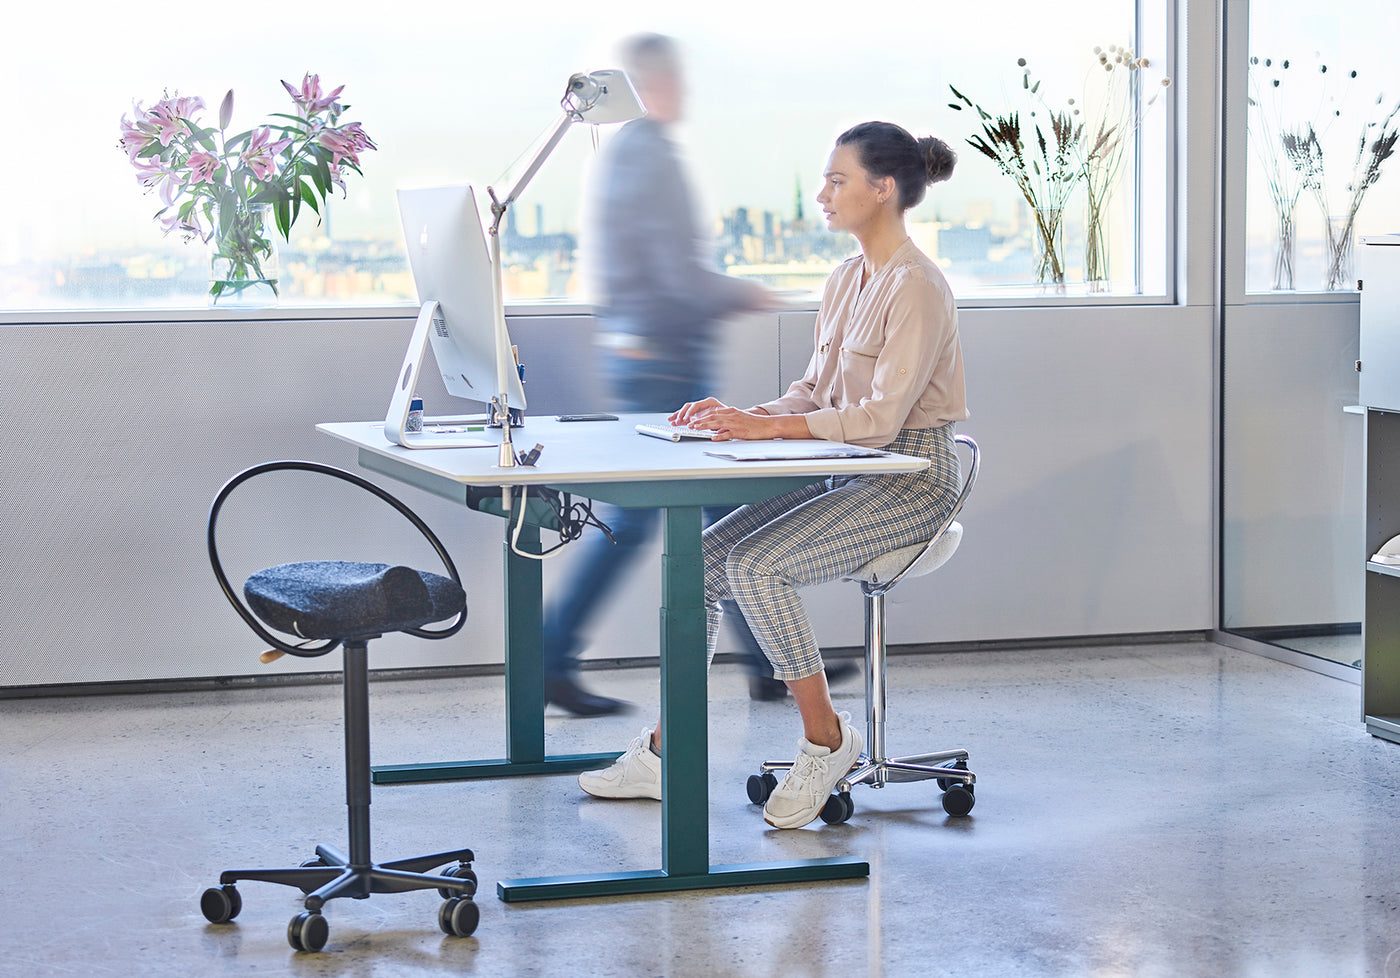 Frau sitzt auf einem ergonomischen Bürostuhl, InCharge Office, bezogen mit hellgrauer Hallingdal-Wolle von Kvadrat. Sie sitzt in einem Büro und arbeitet an ihrem IMac.